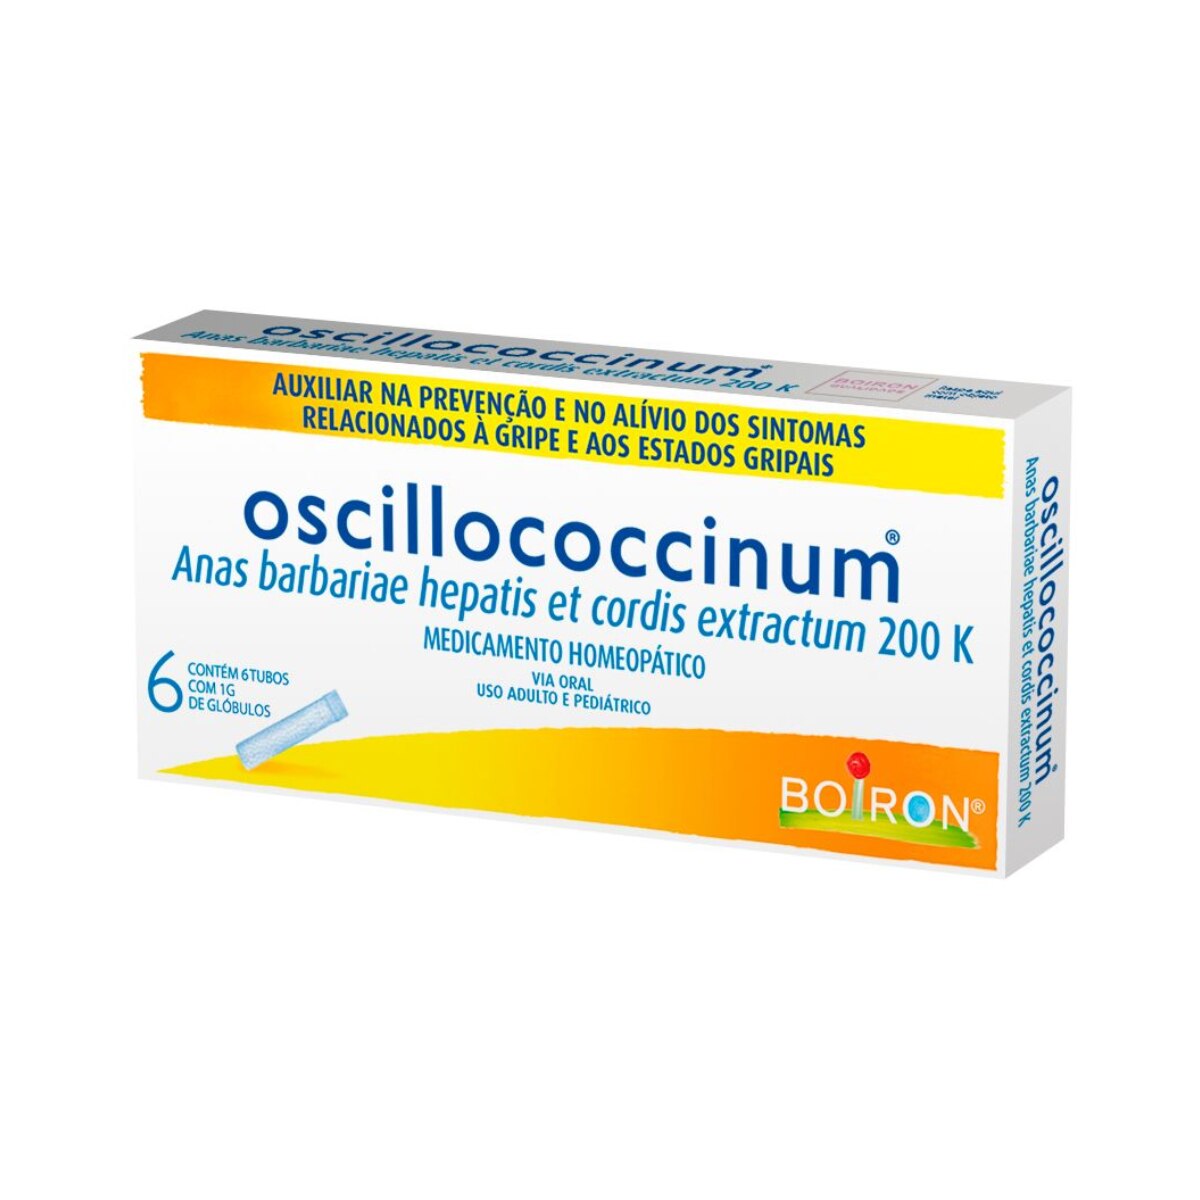 Oscillococcinum 200k 6 Tubos com 1g de Globulos